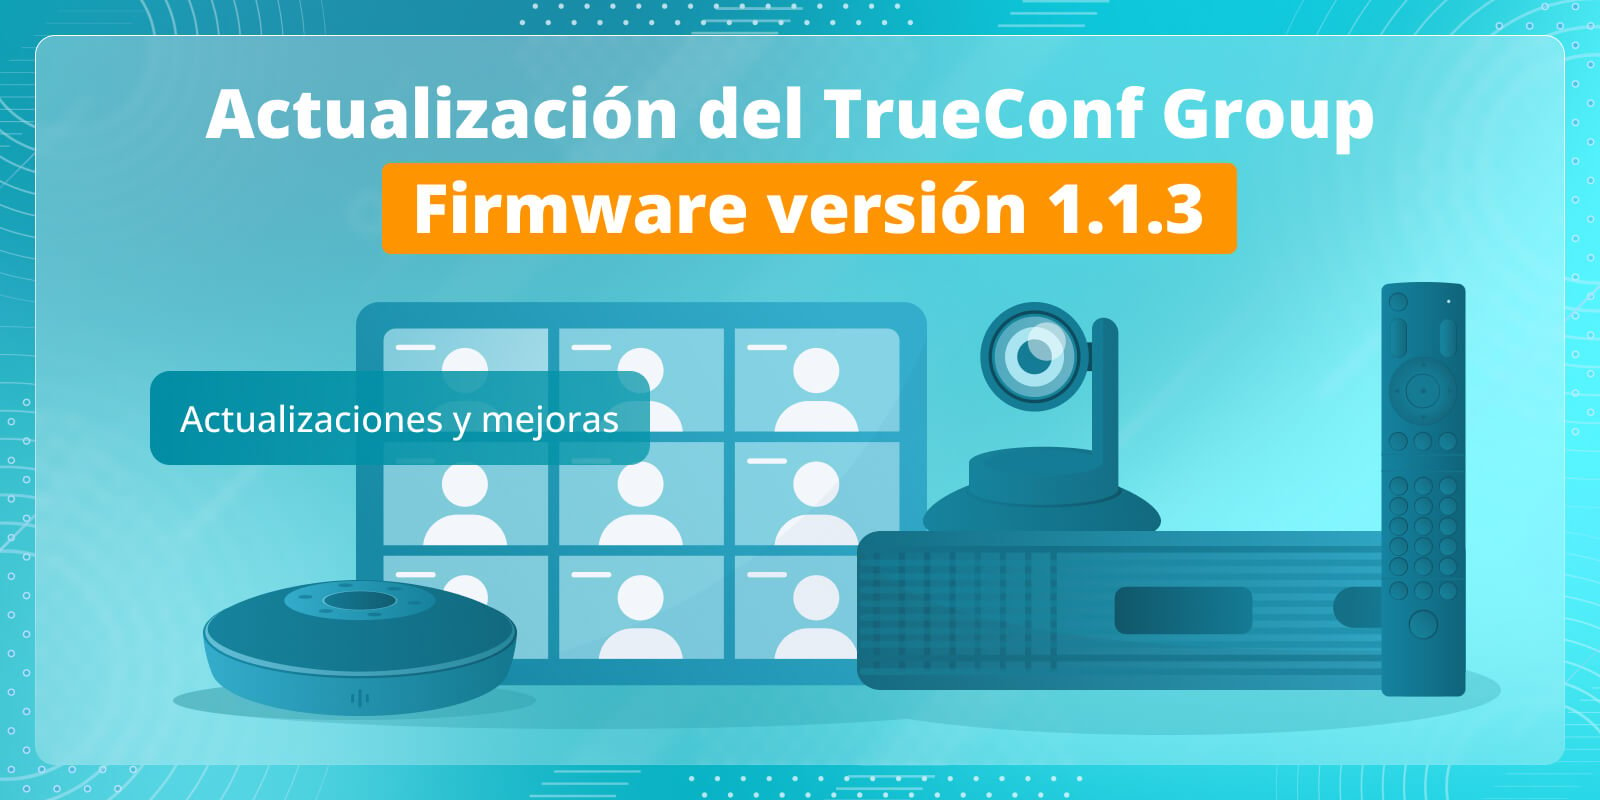 TrueConf Group 1.1.3: actualizaciones y mejoras 1